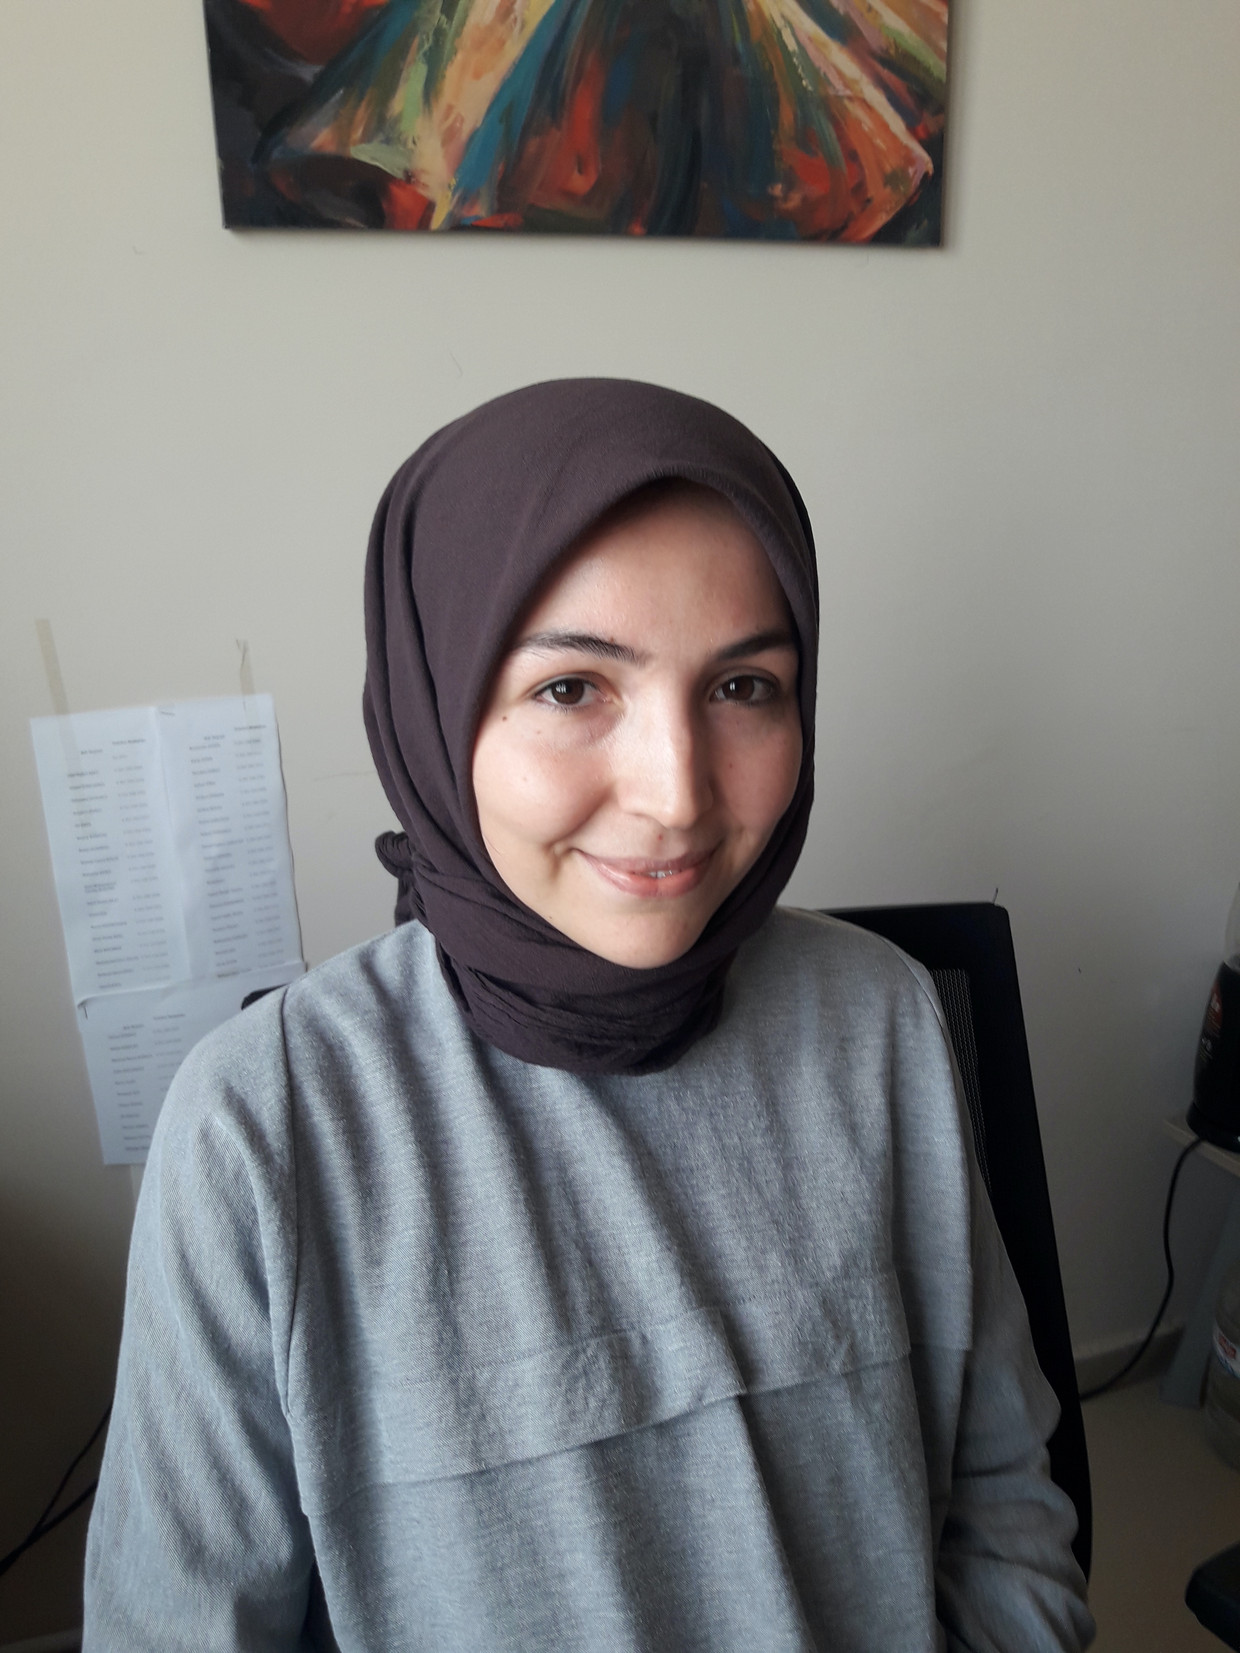 In Turkije ging strijd juist om het om het hoofd te bedekken: 'Vrouwen met een hoofddoek voelden tweederangsburgers'